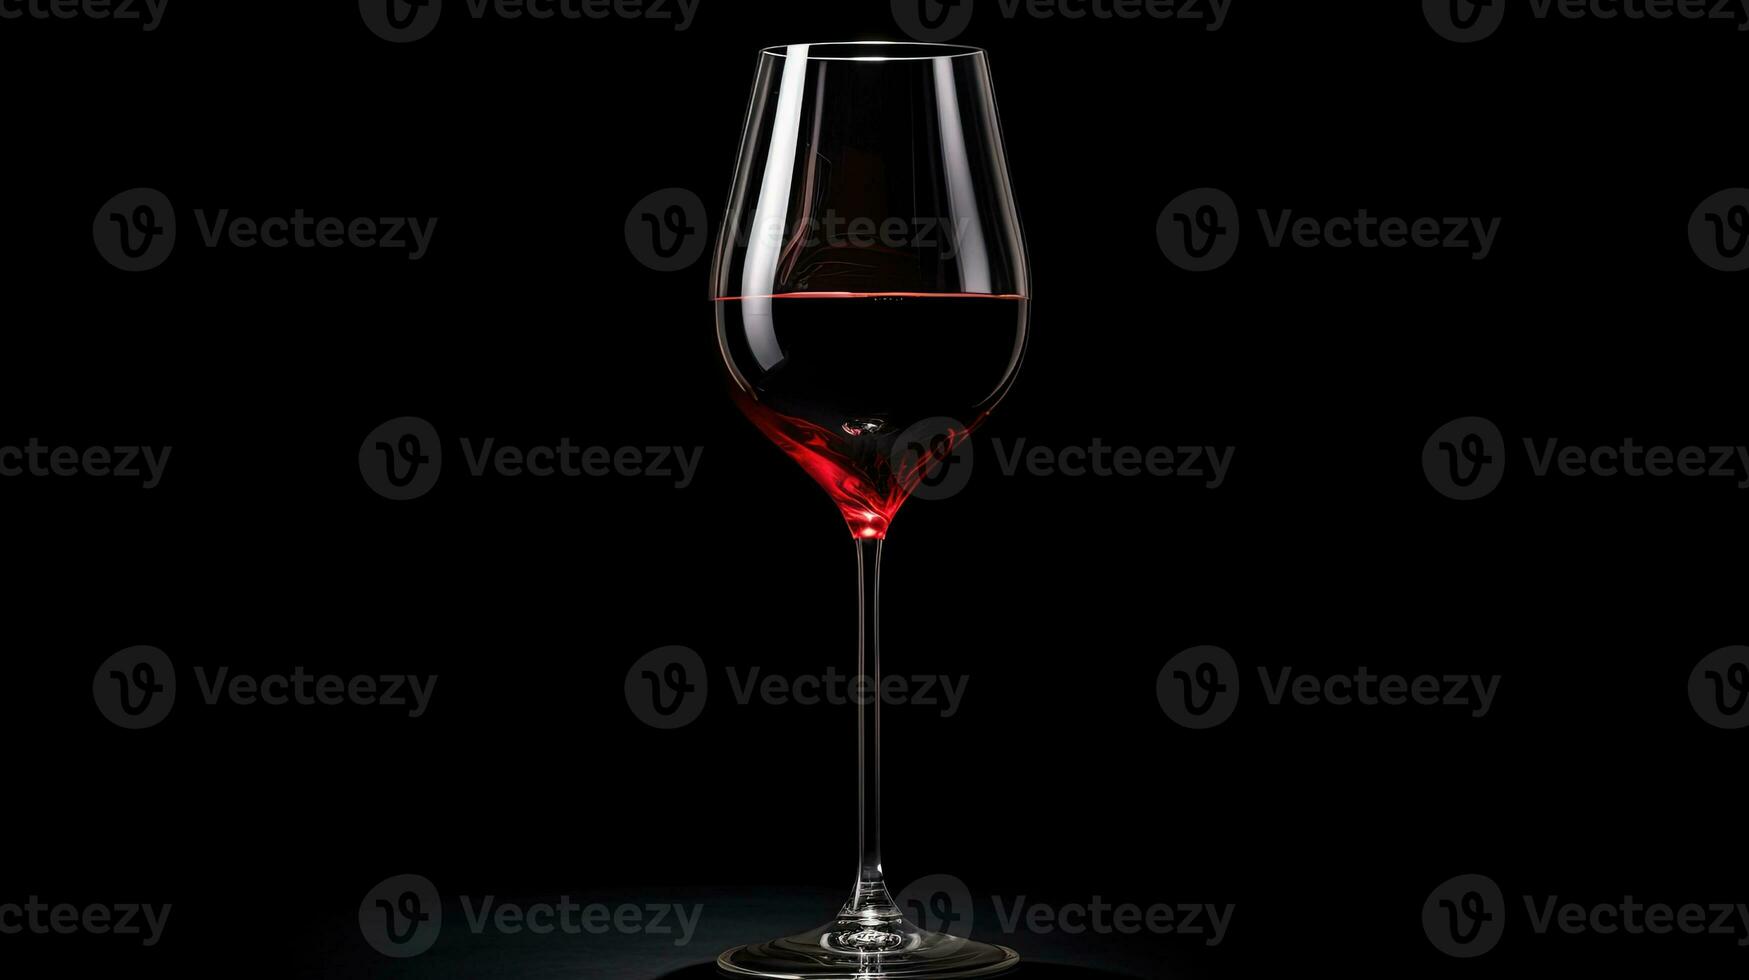 ein Glas von rot Wein auf ein hoch Bein gegen ein schwarz Hintergrund. Silhouette Konzept foto